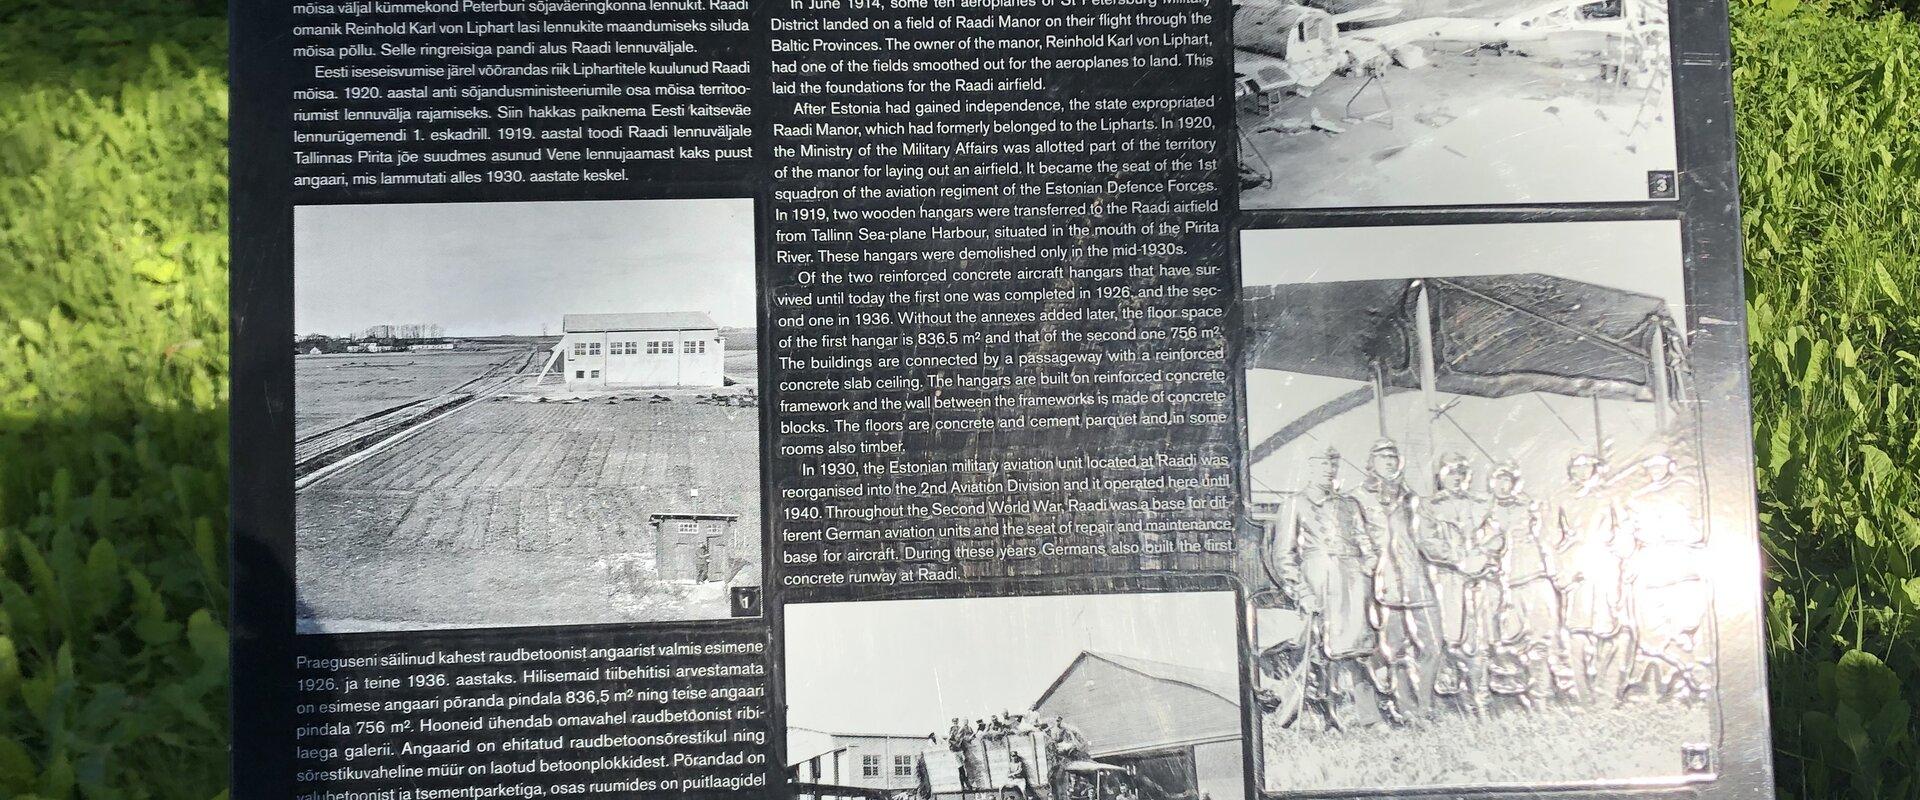 Bulletin board near Raadi Aircraft Hangars